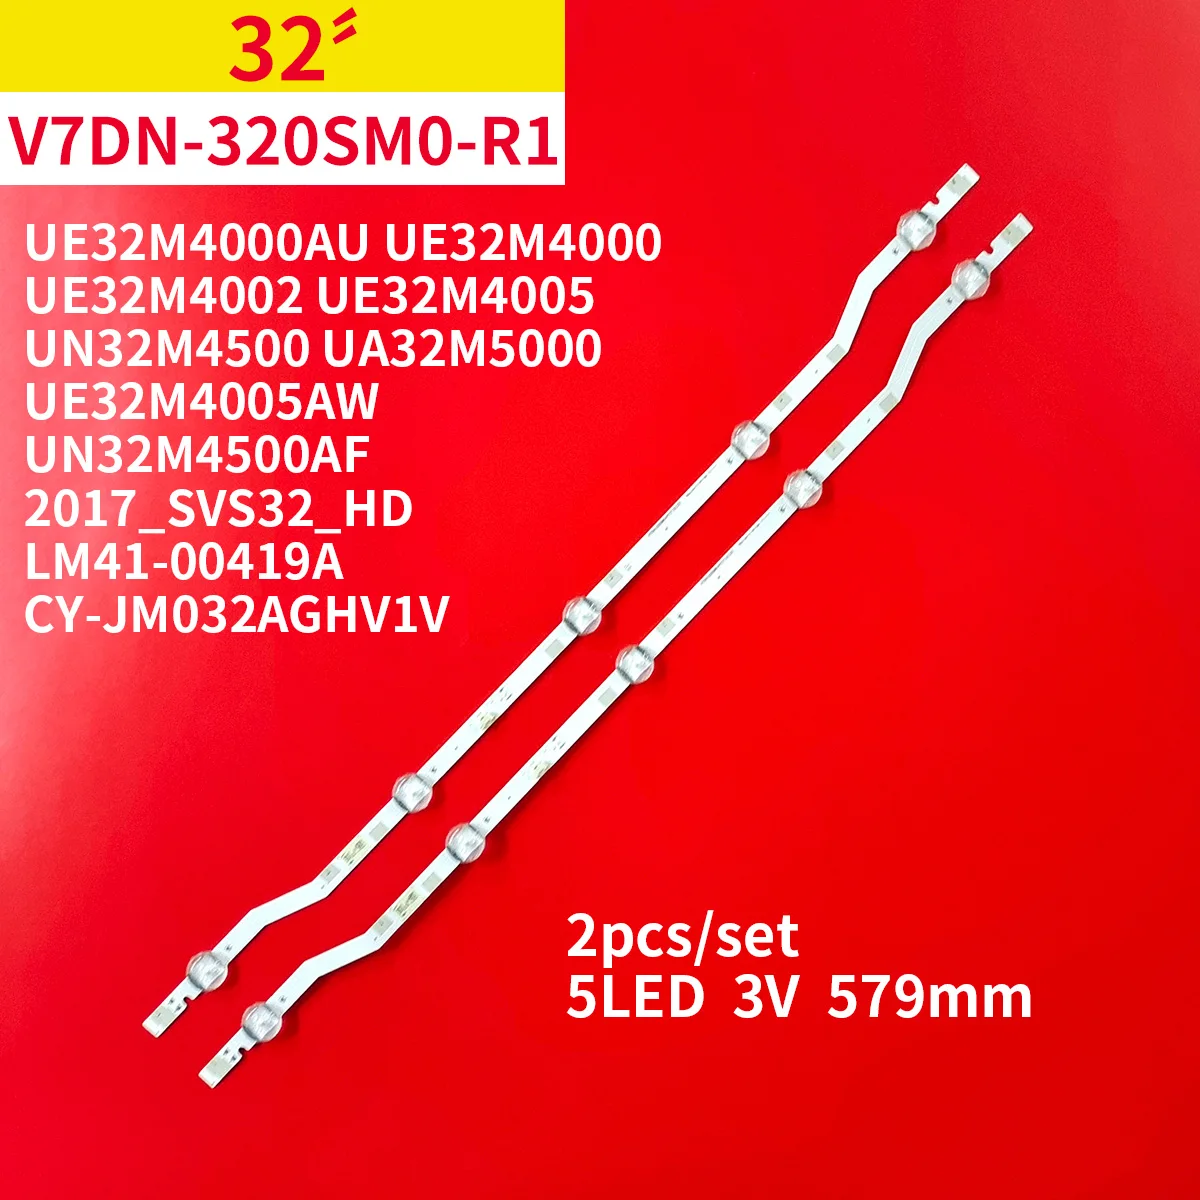 

LED Strips For Sam sung UE32M4000AU UE32M4000 UE32M4000AK UE32M4005 UN32M4500 UA32M5000 V7DN-320SM0-R1 BN96-43703A LM41-00419A